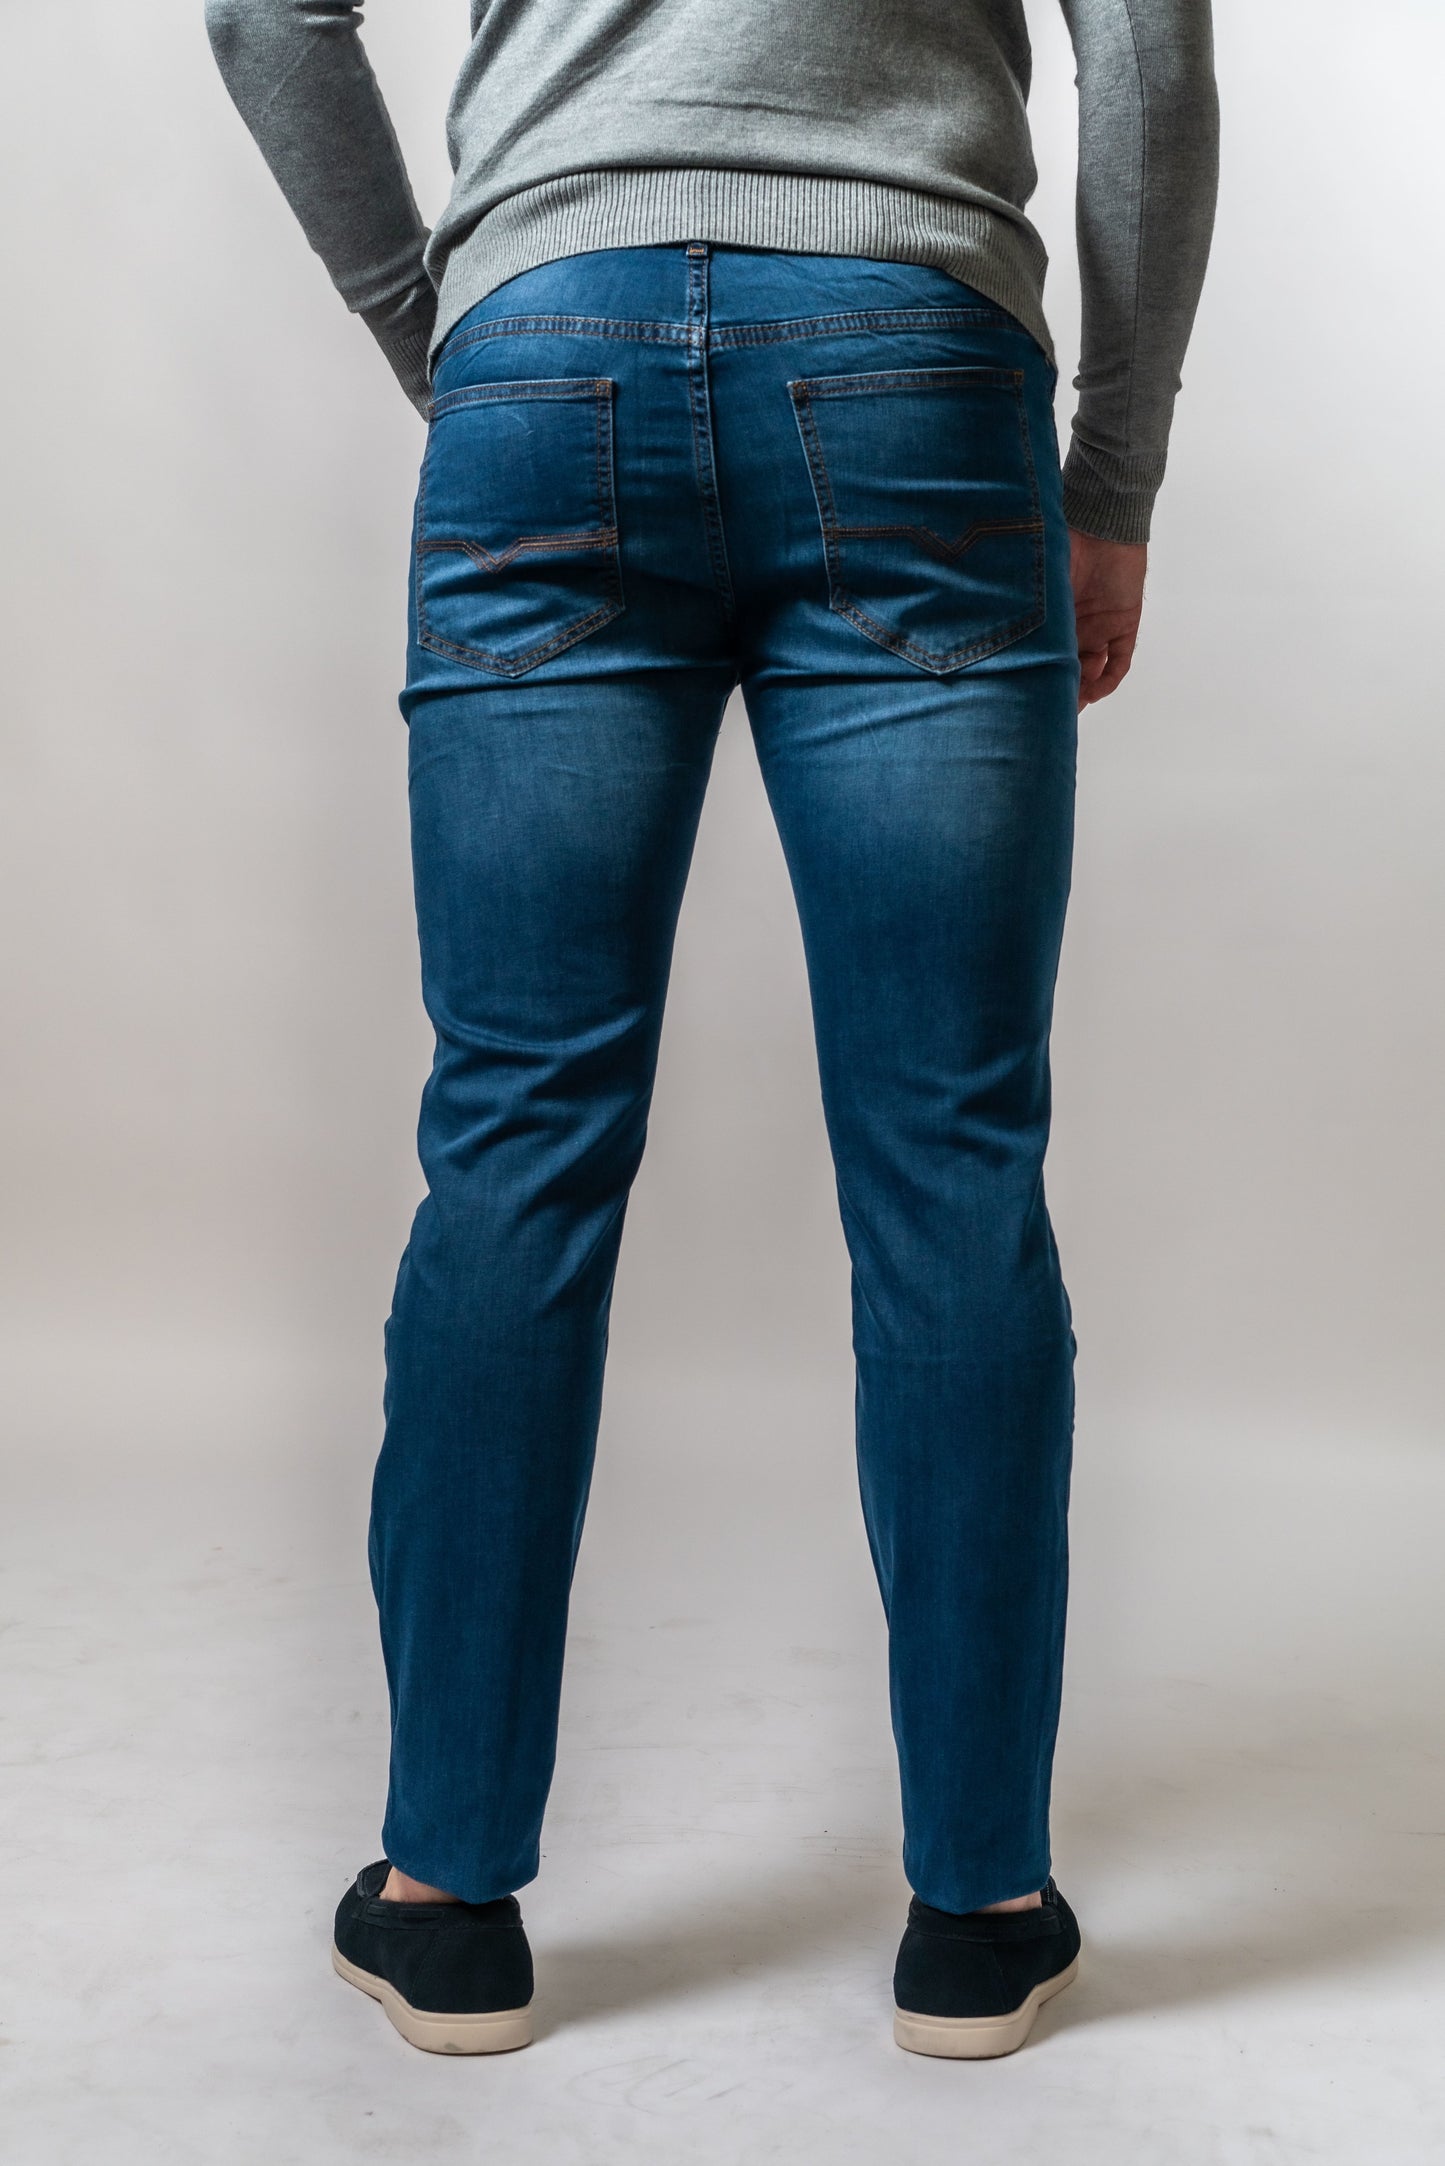 Achterkant van donkerblauwe jeans van Suitify gedragen door een man